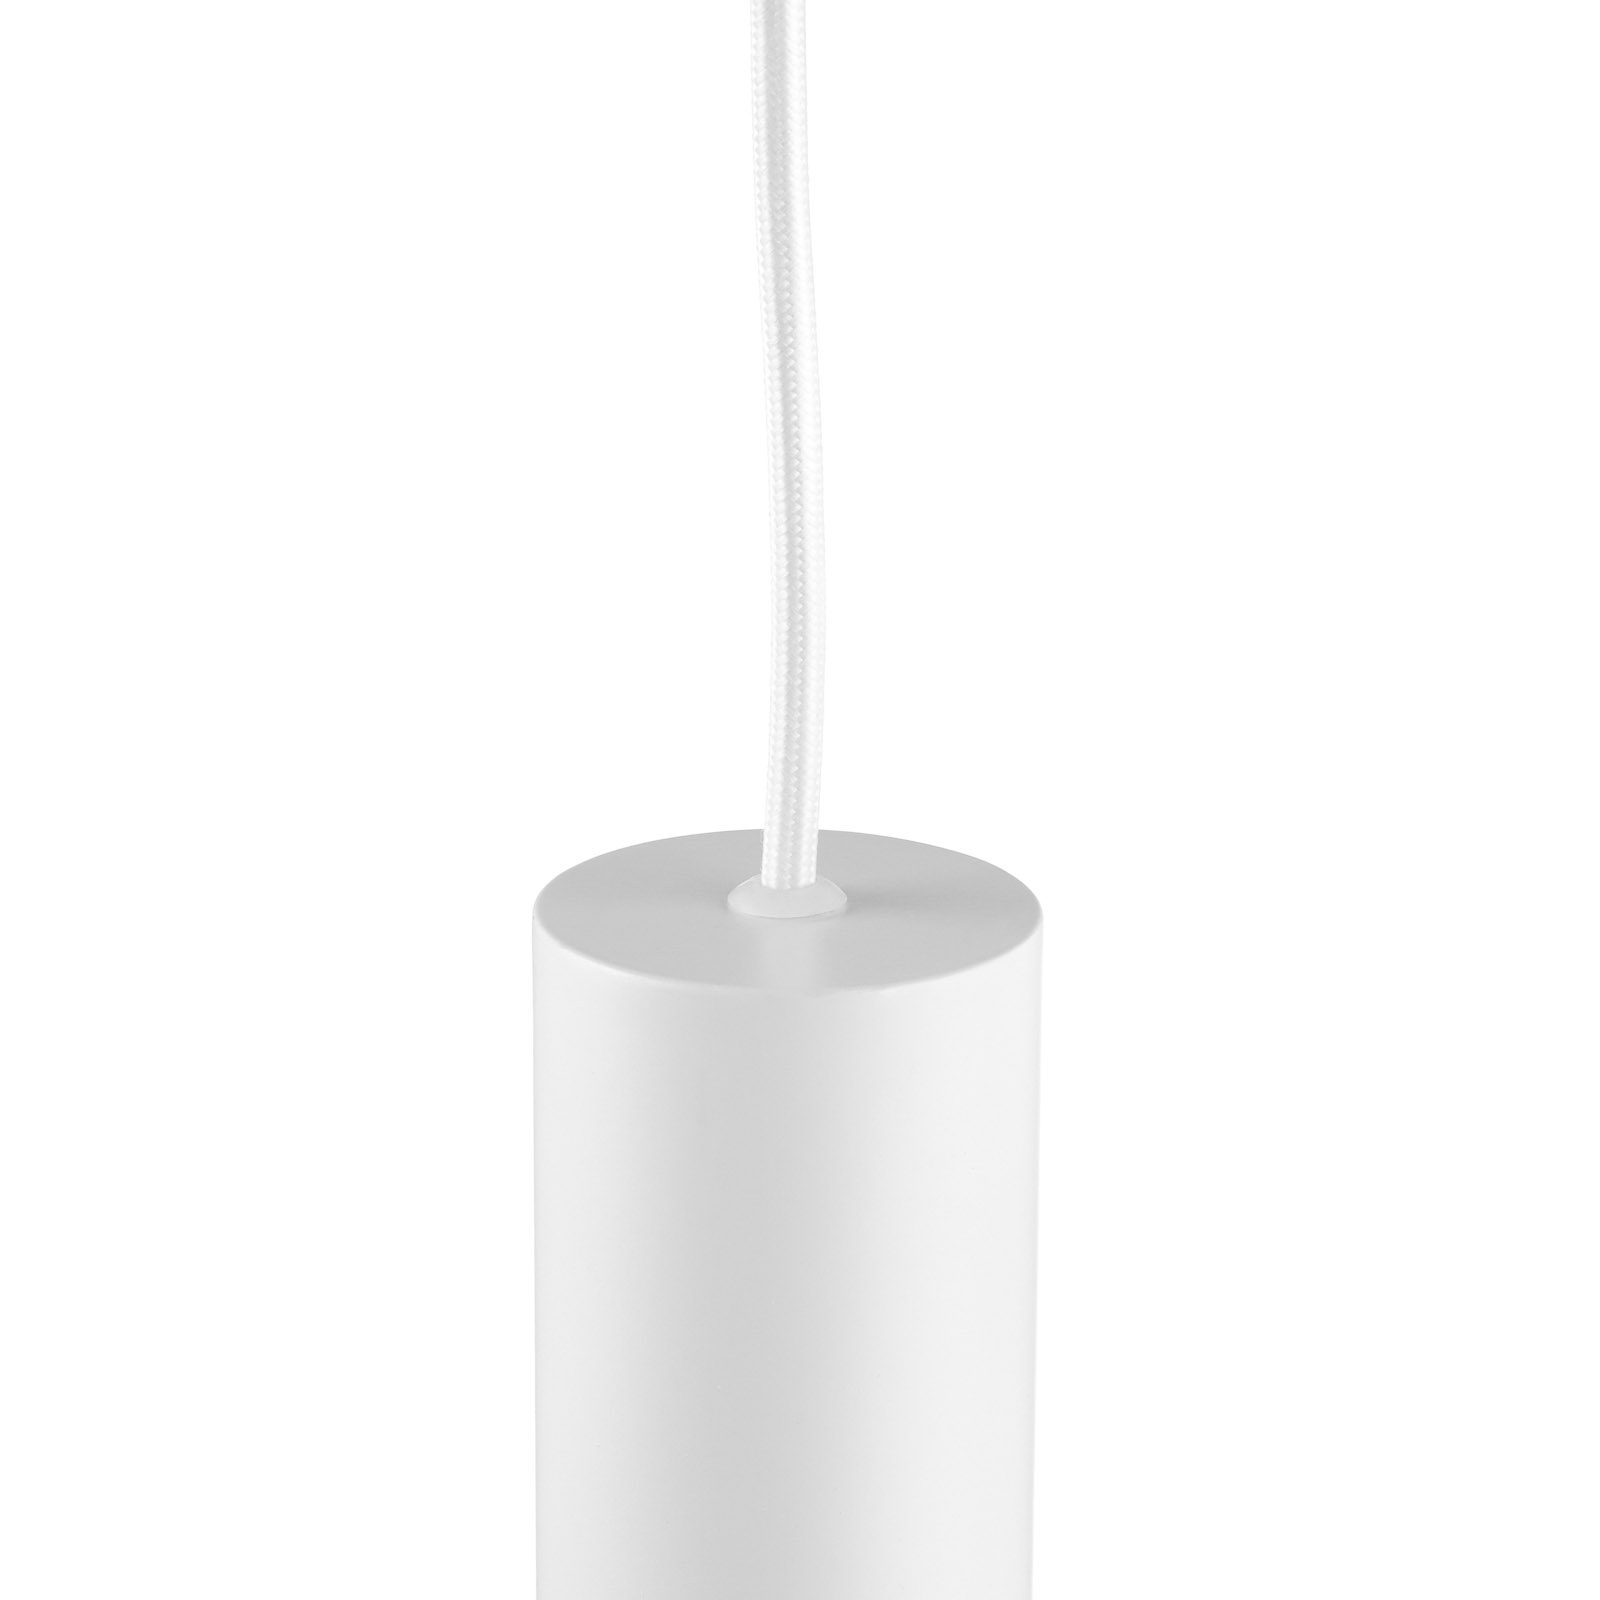 Suspension LED Look de forme allongée, blanche